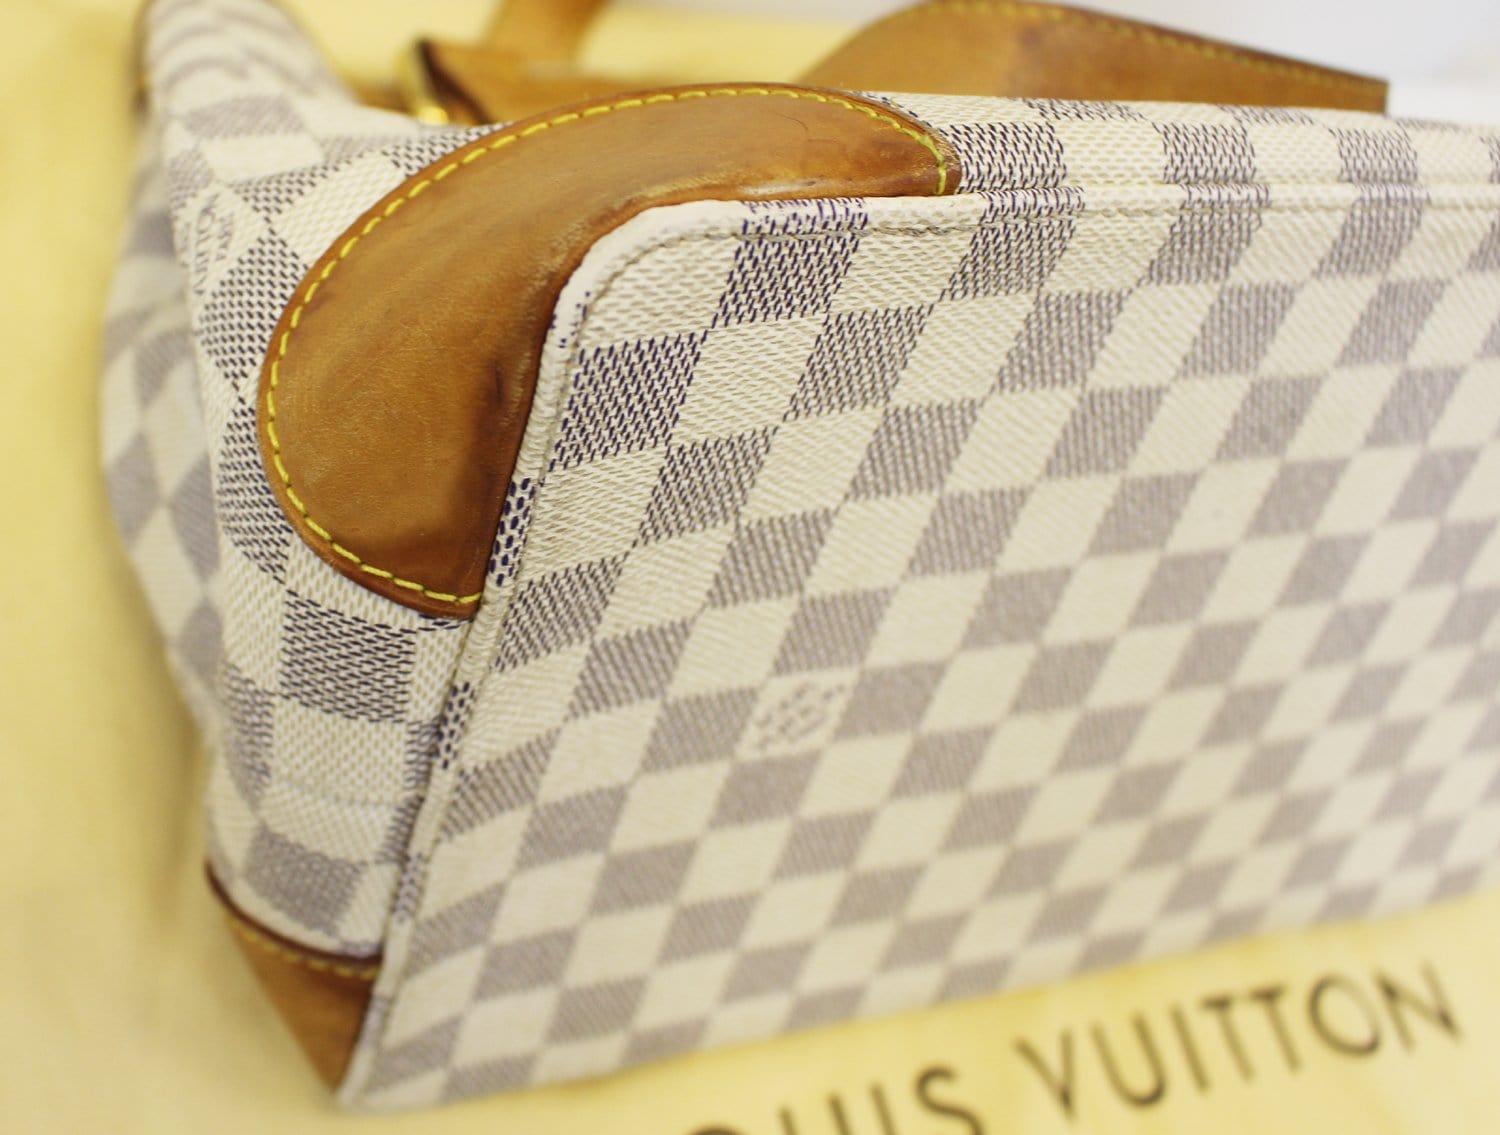 Louis Vuitton Damier Azur Hampstead PM - Neutrals Totes, Handbags